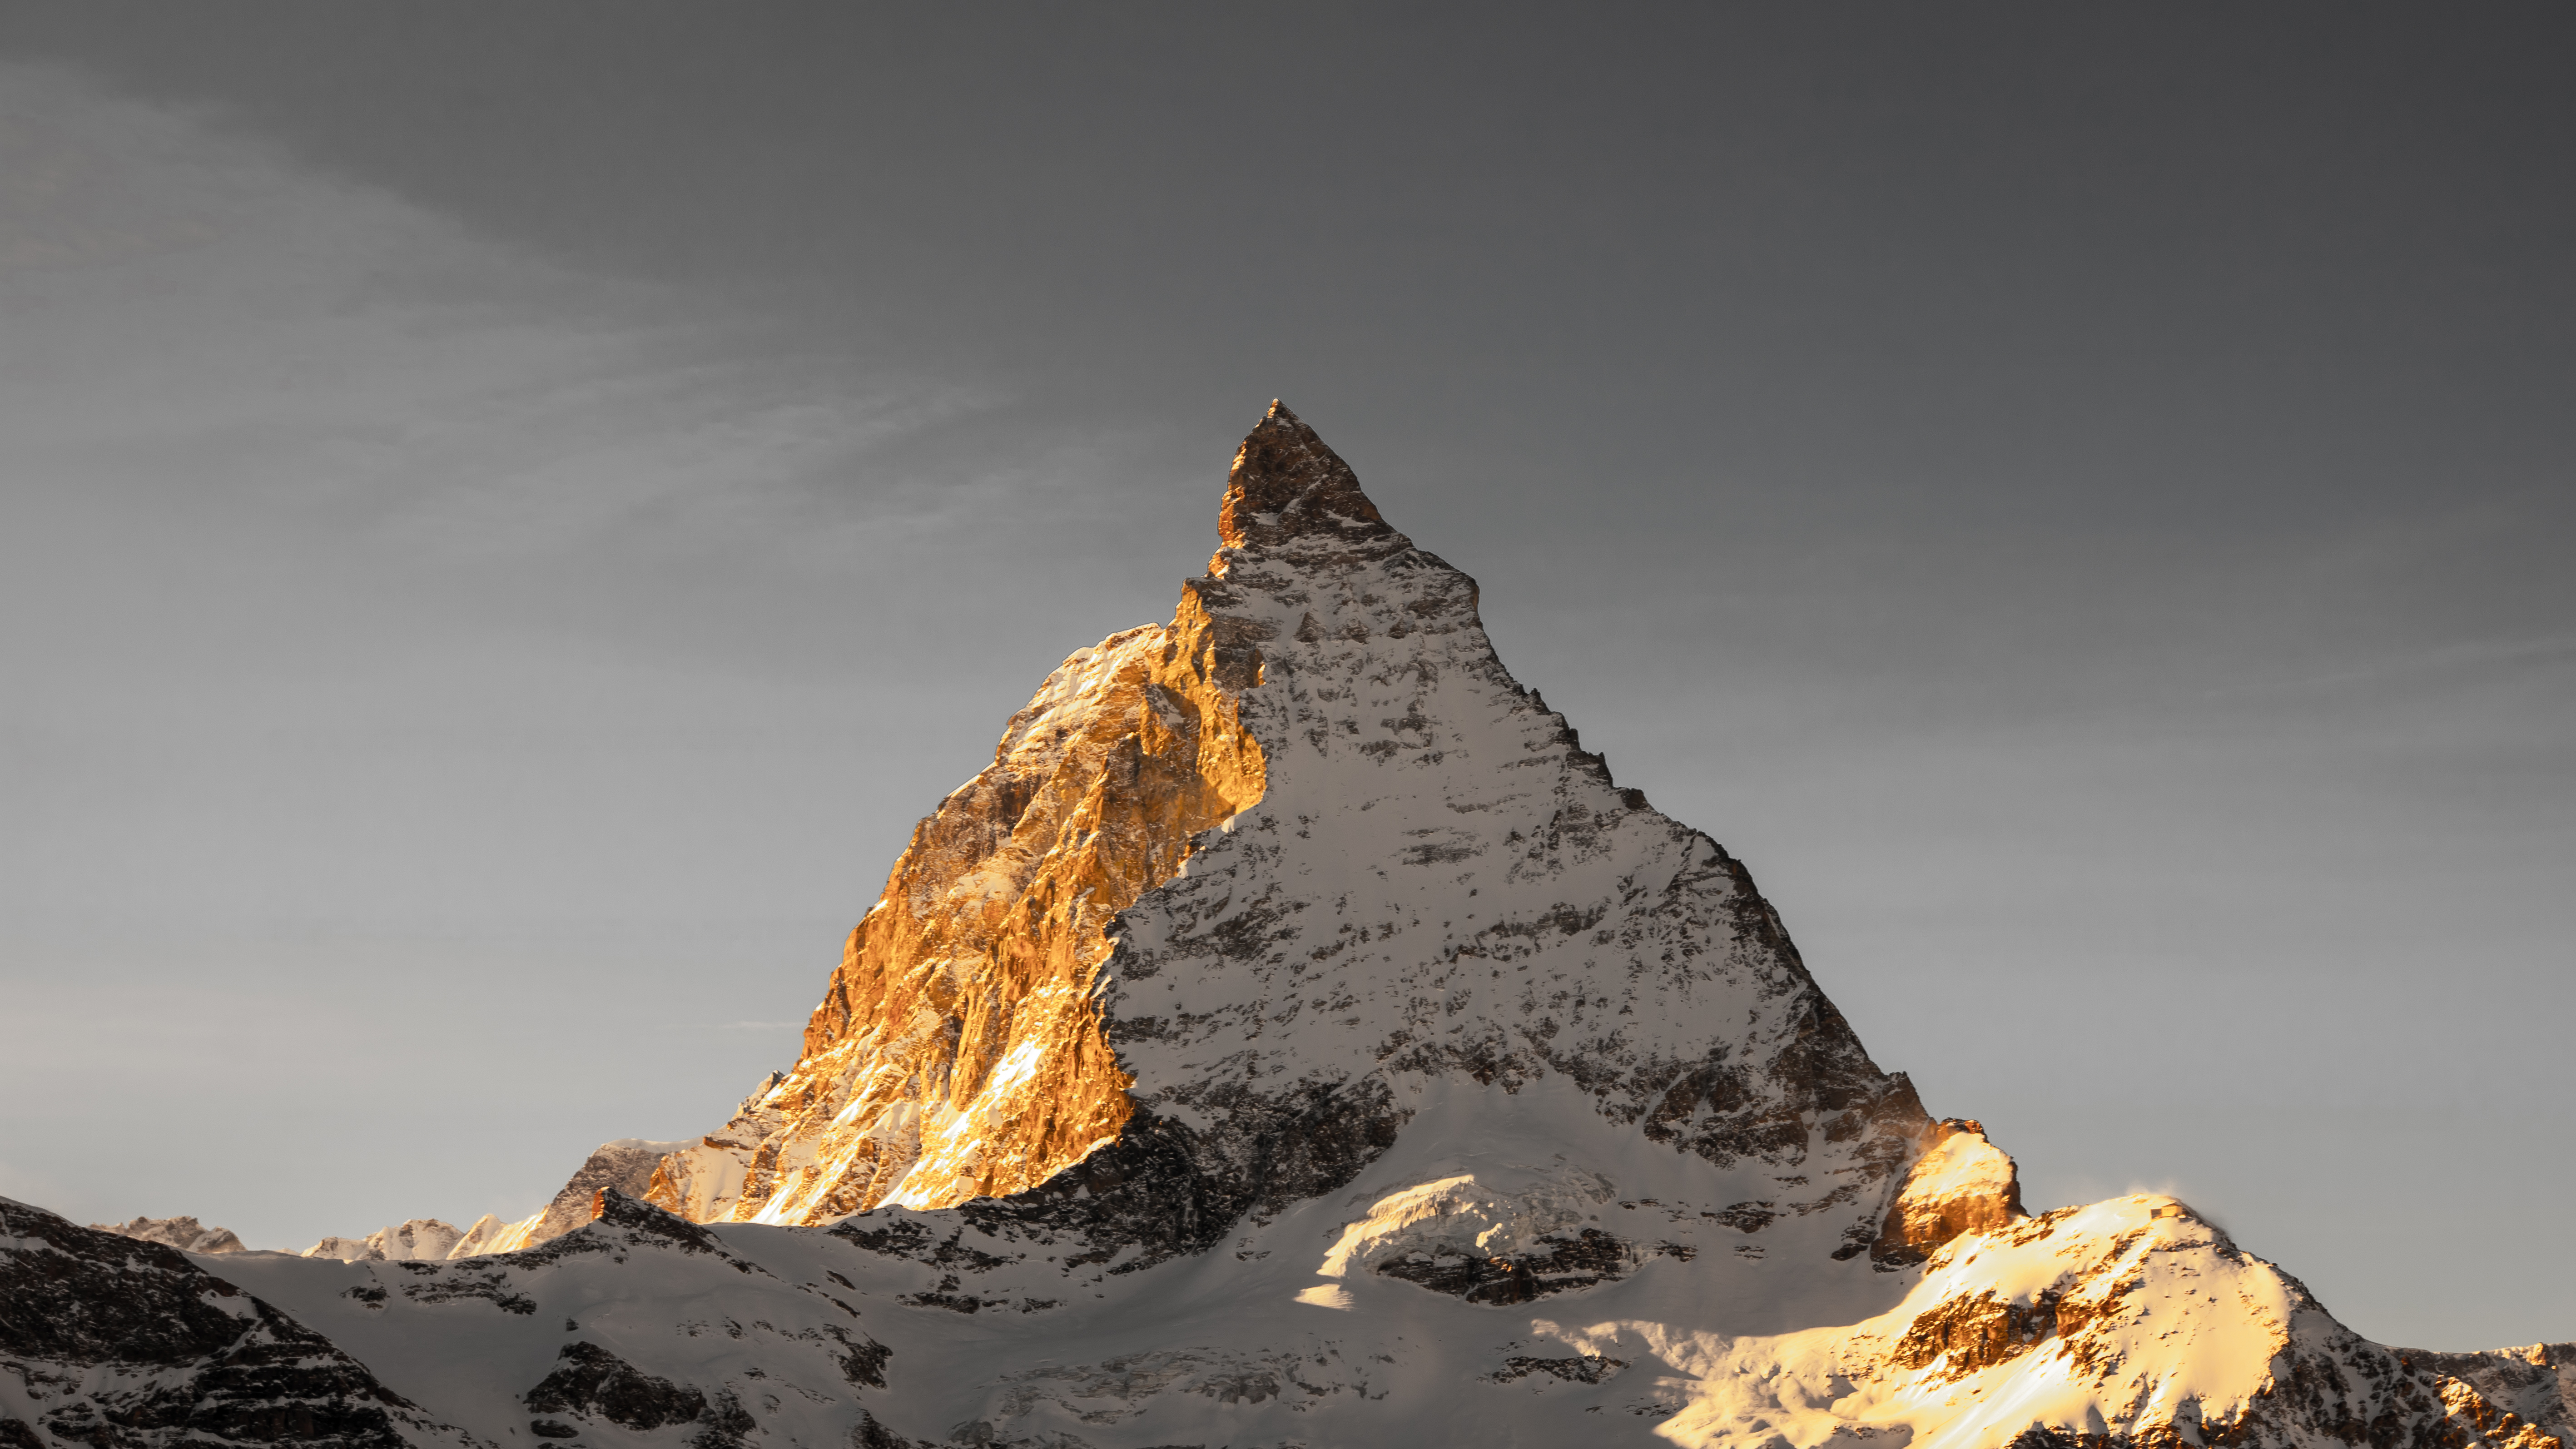 General 5671x3190 Switzerland landscape mountains summit Matterhorn winter snow skiing Cervino